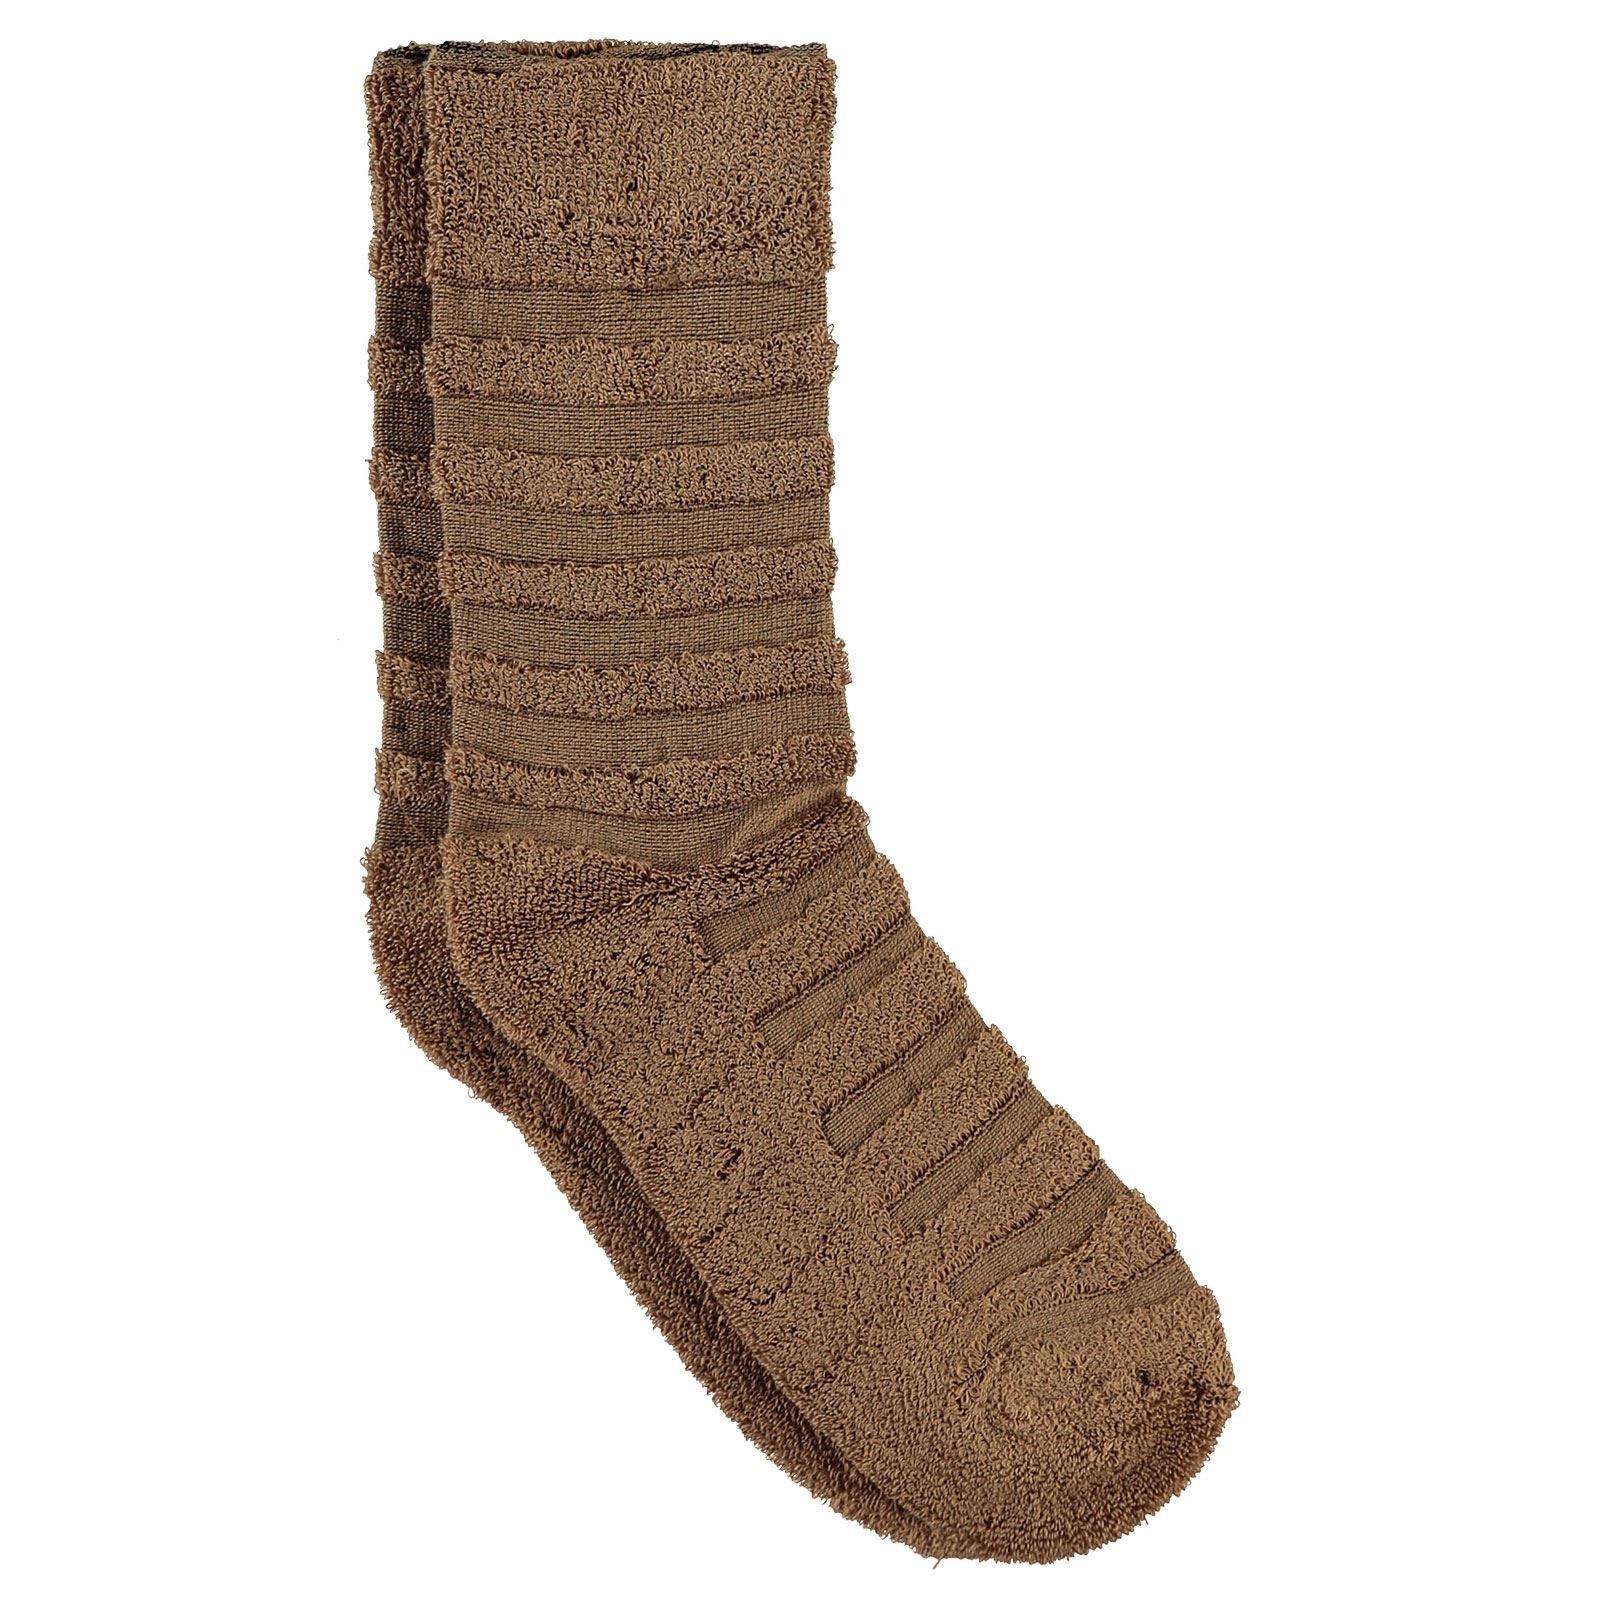 Bella Calze Kız Çocuk Ters Havlu Soket Çorap 36-40 Numara Kahverengi